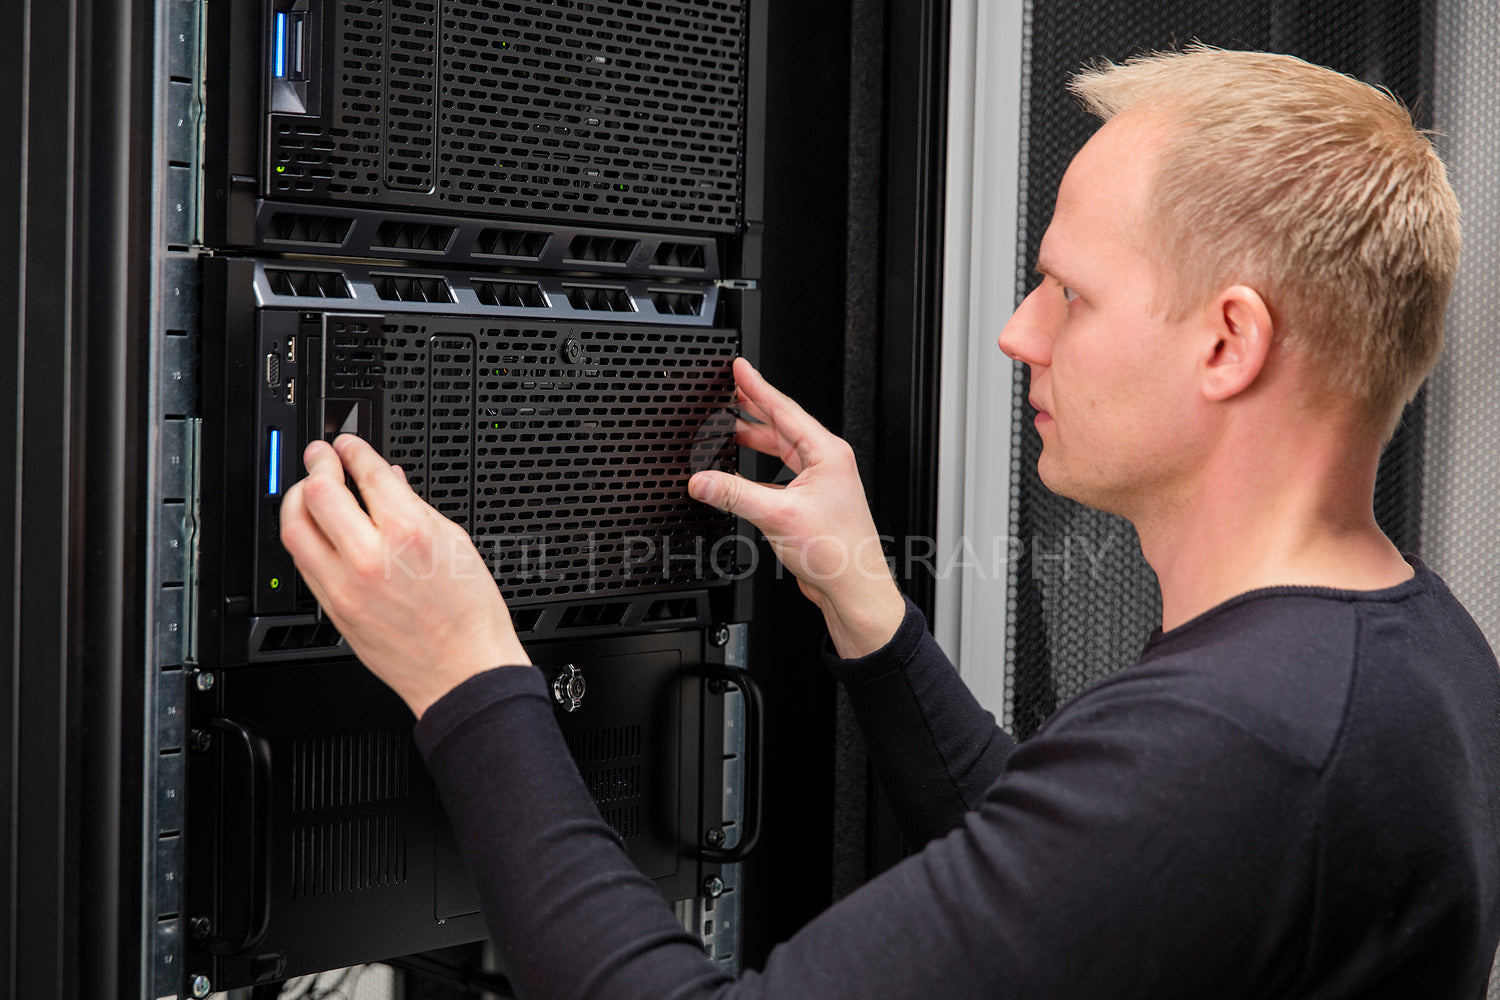 It consultant installing server in datacenter